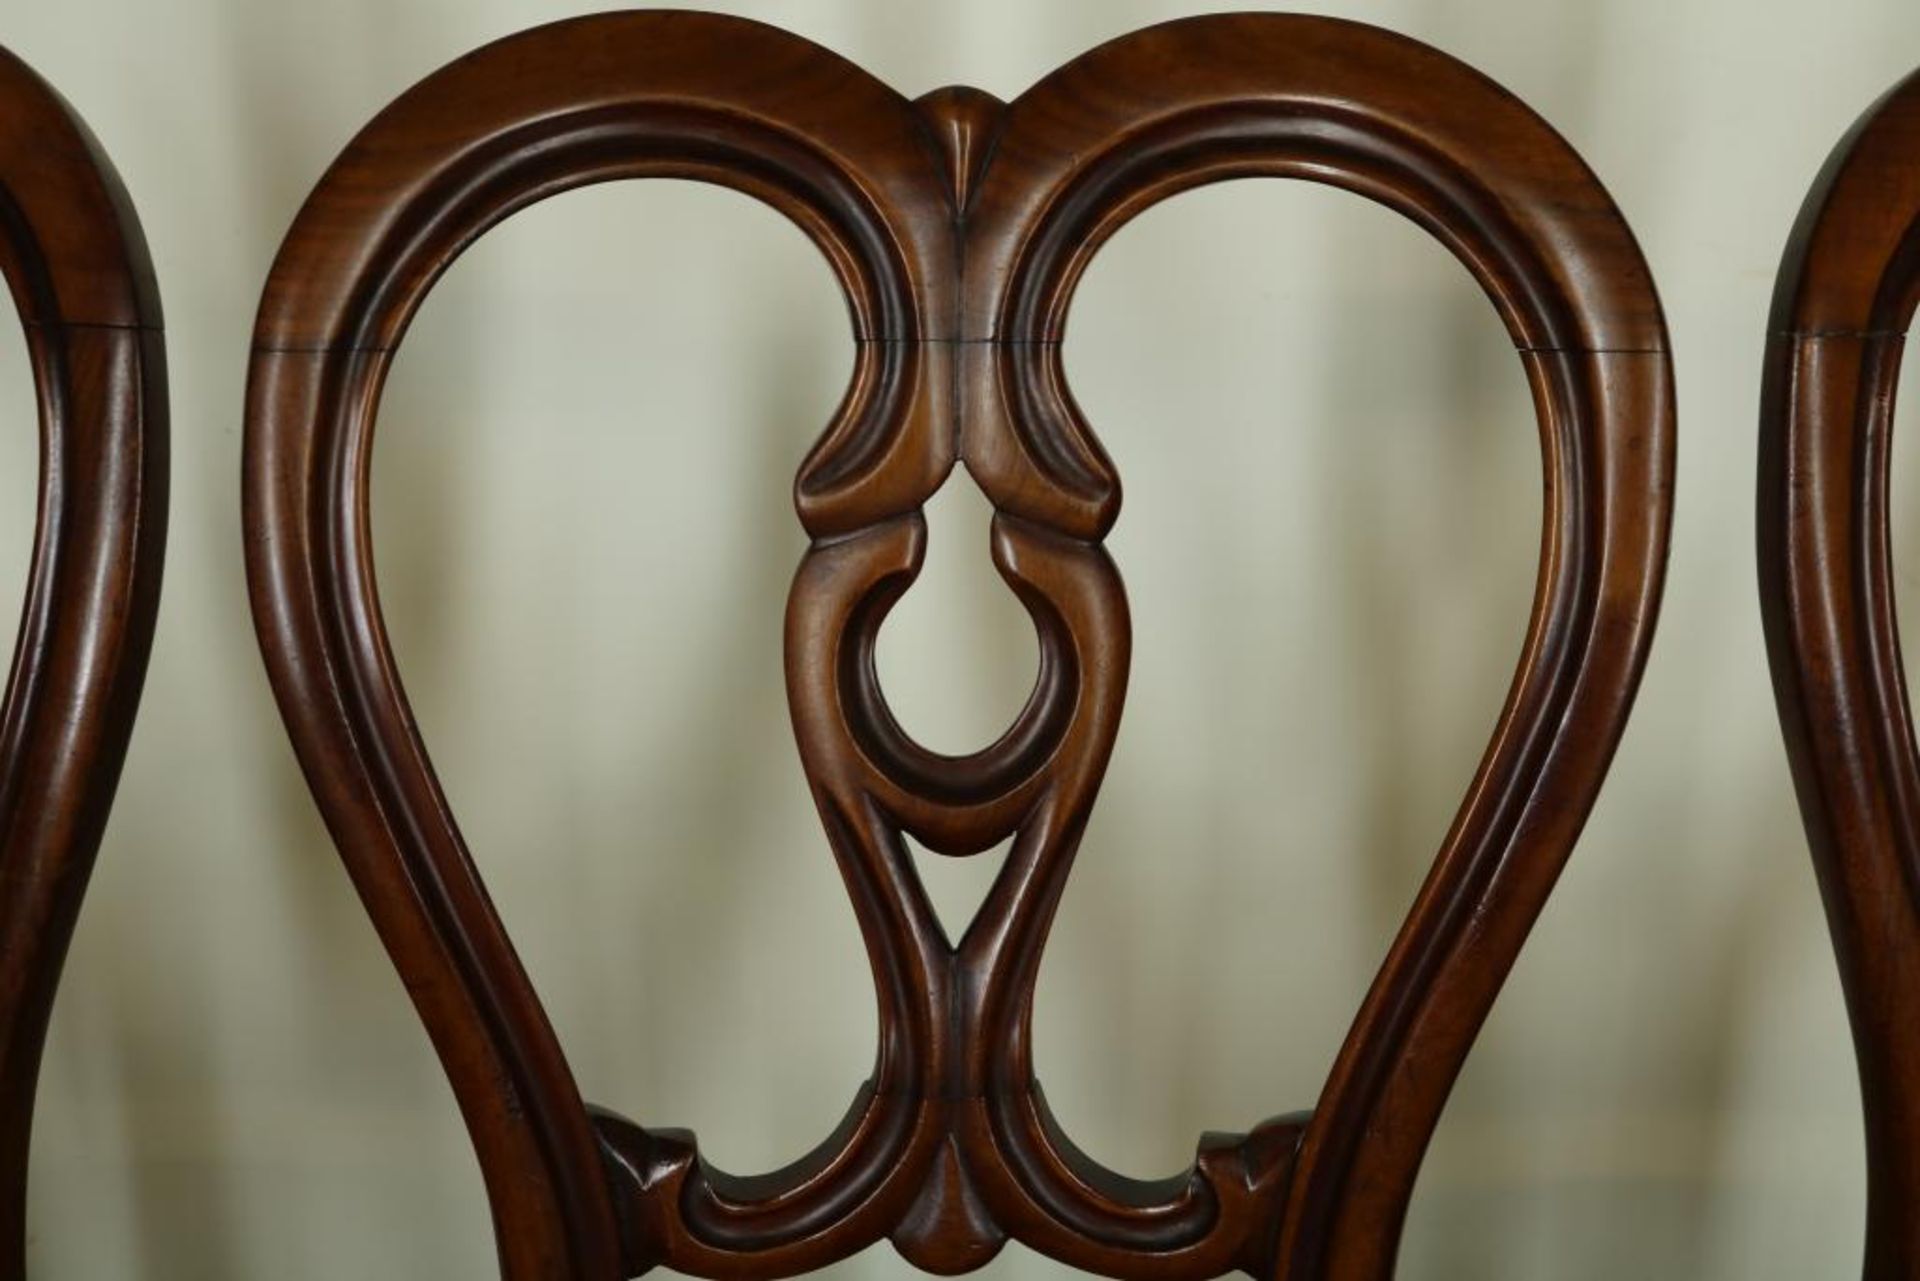 Serie van 5 mahonie stoelen met opengewerkte rugleuning bekleed met geschoren velours, 19e eeuw. - Bild 2 aus 3